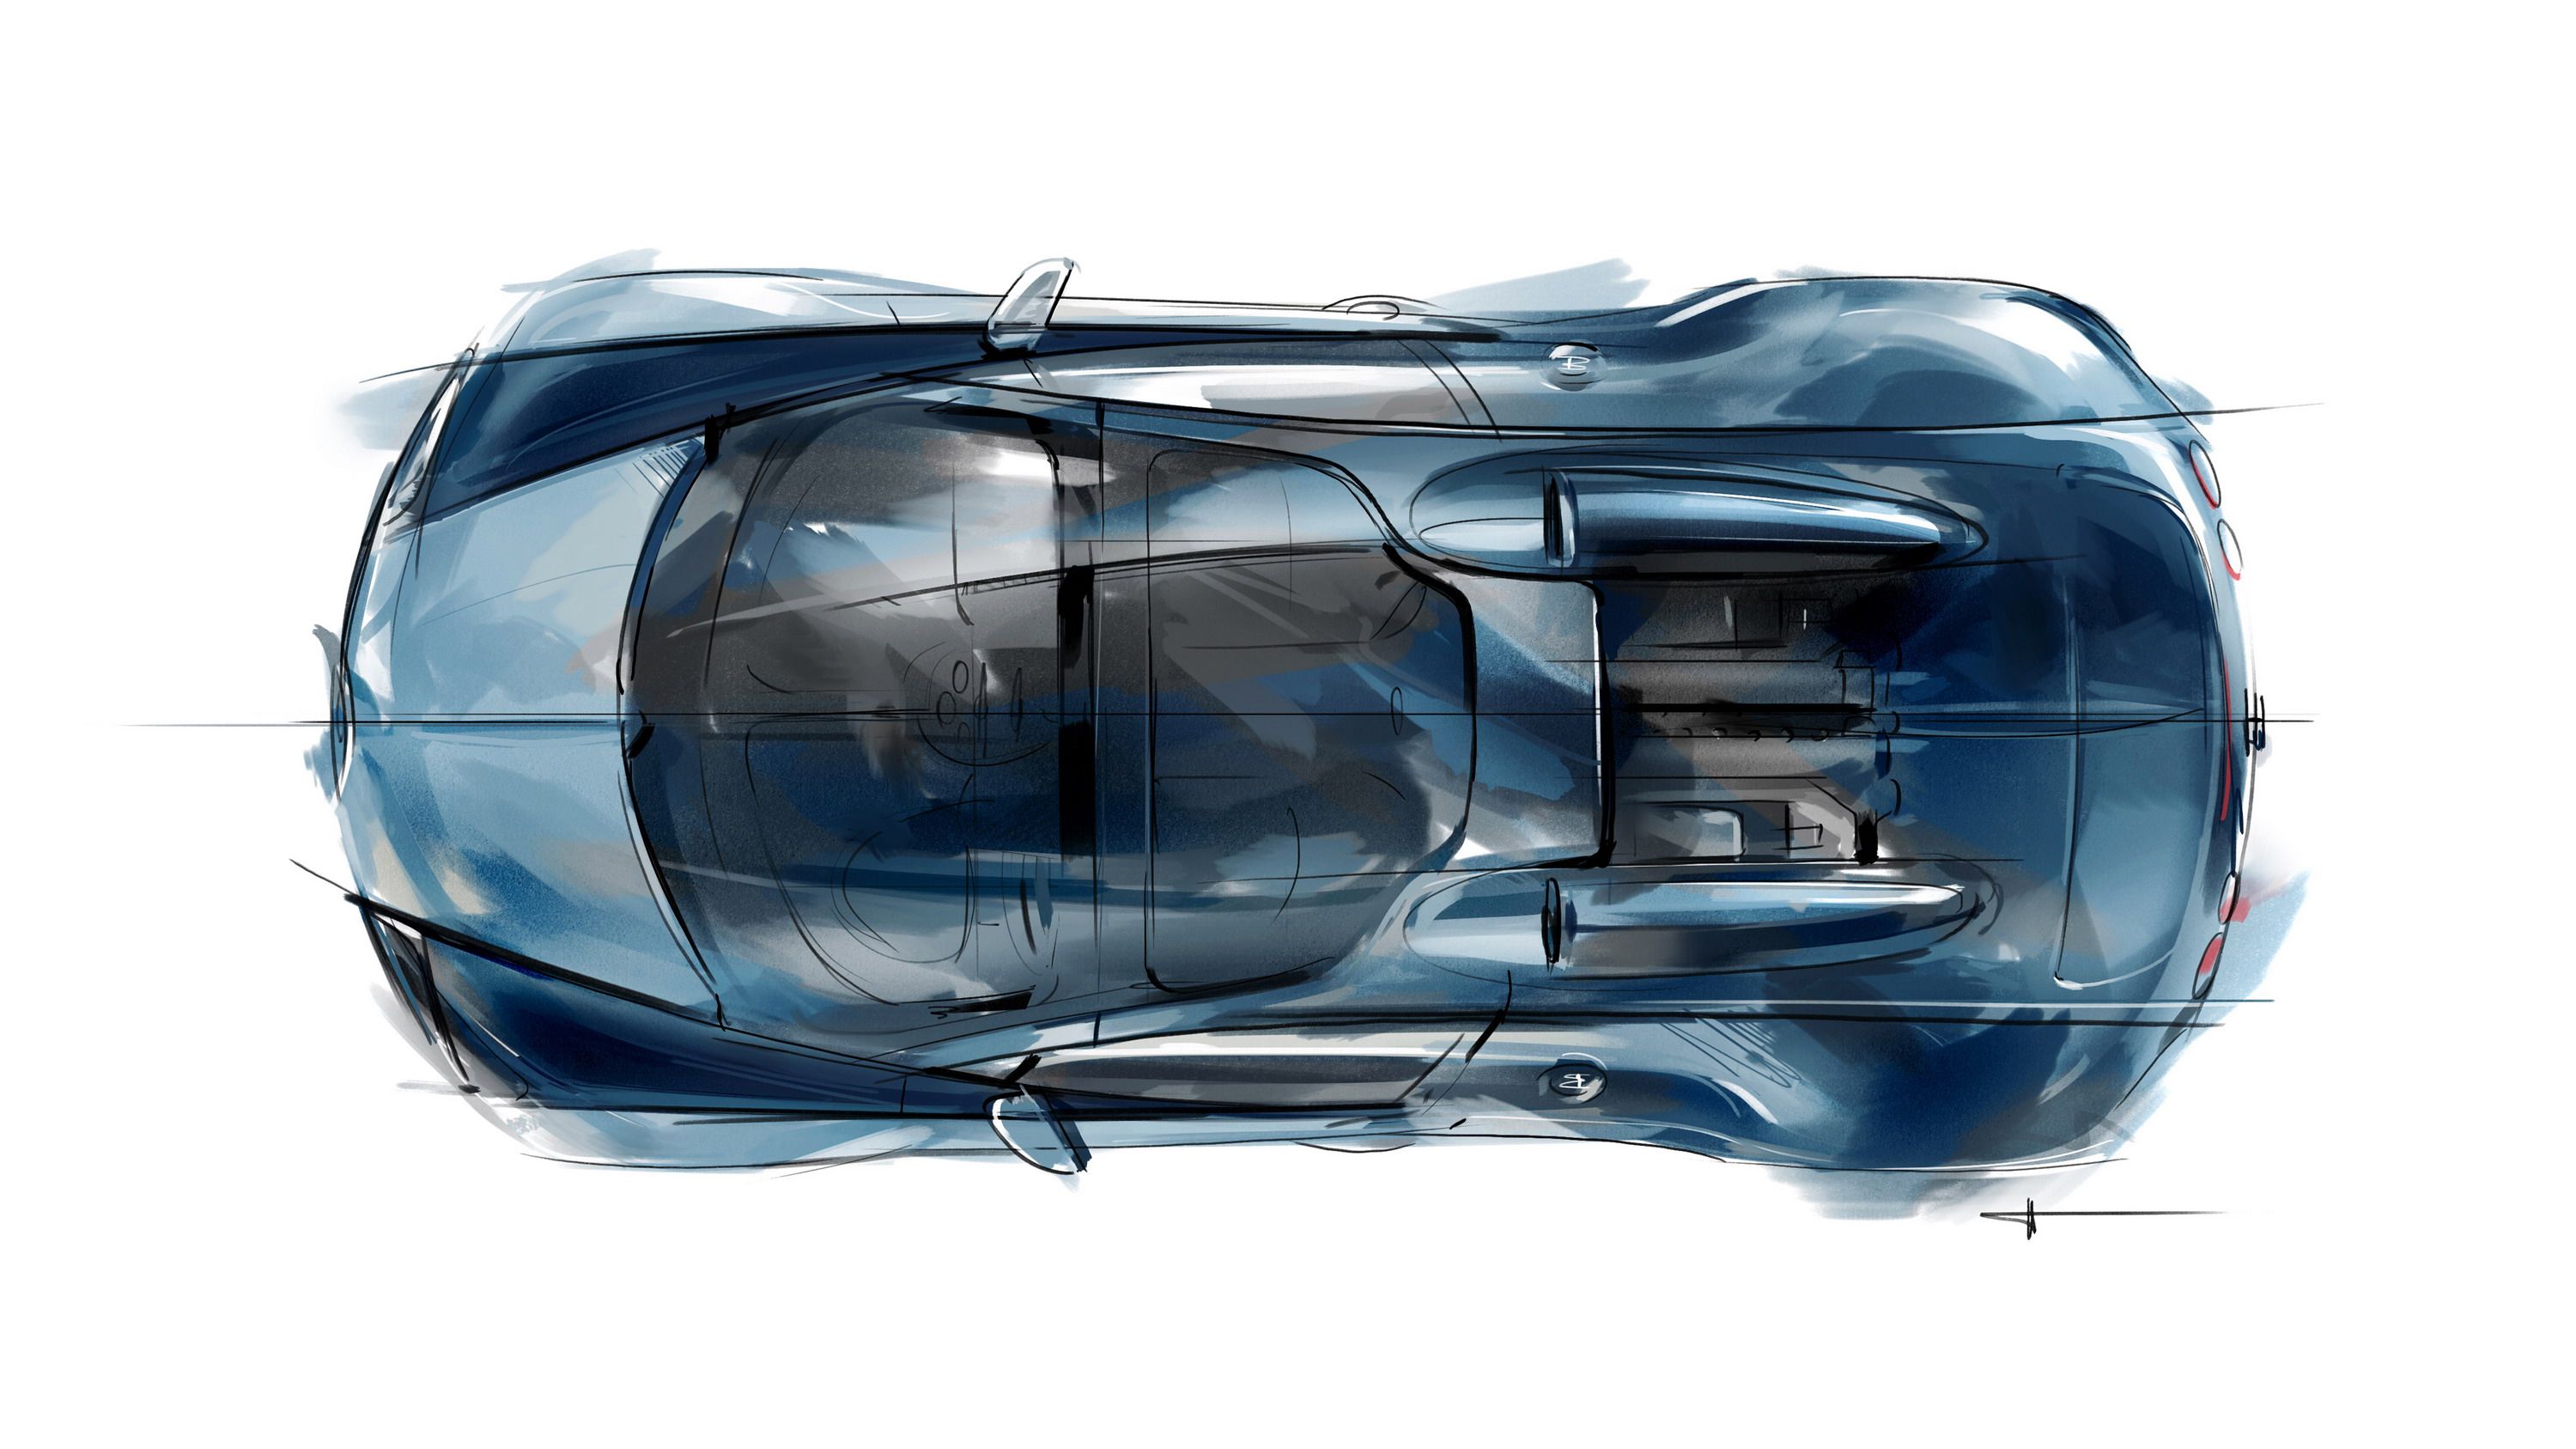 2013 Bugatti Veyron Grand Sport Vitesse 